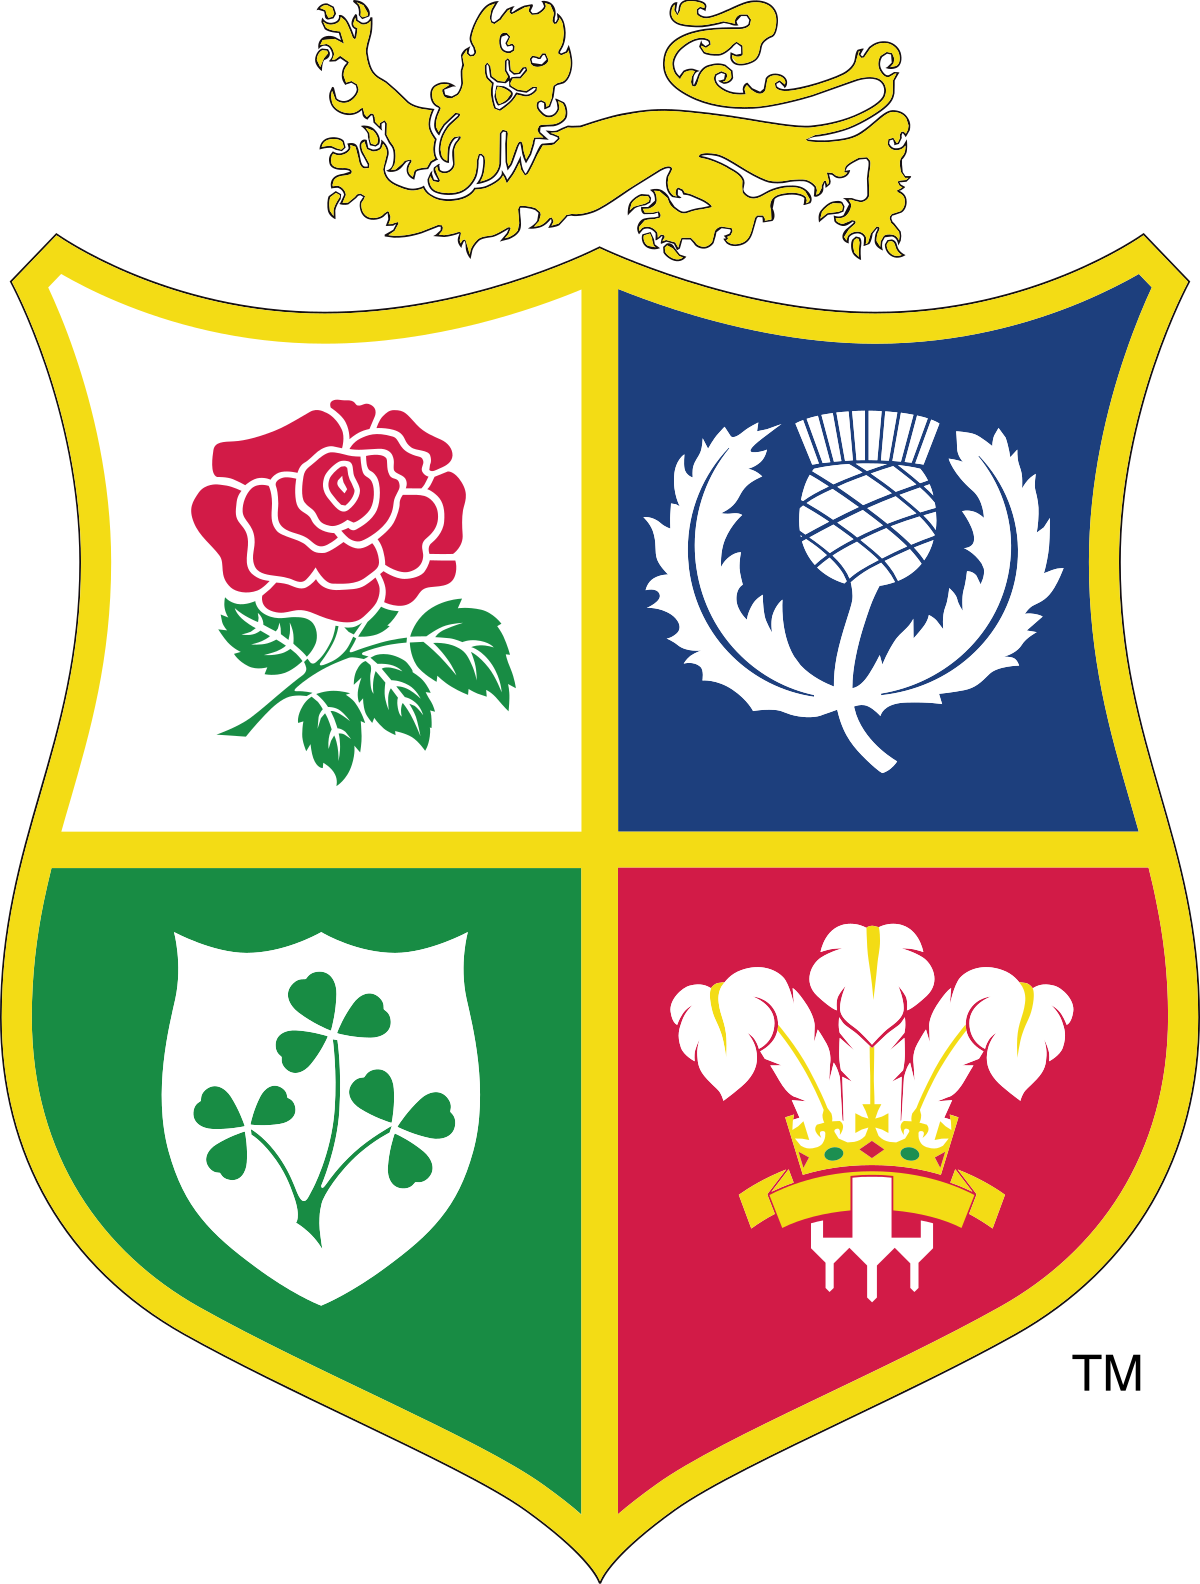 British and Irish Lions - Wikipedia